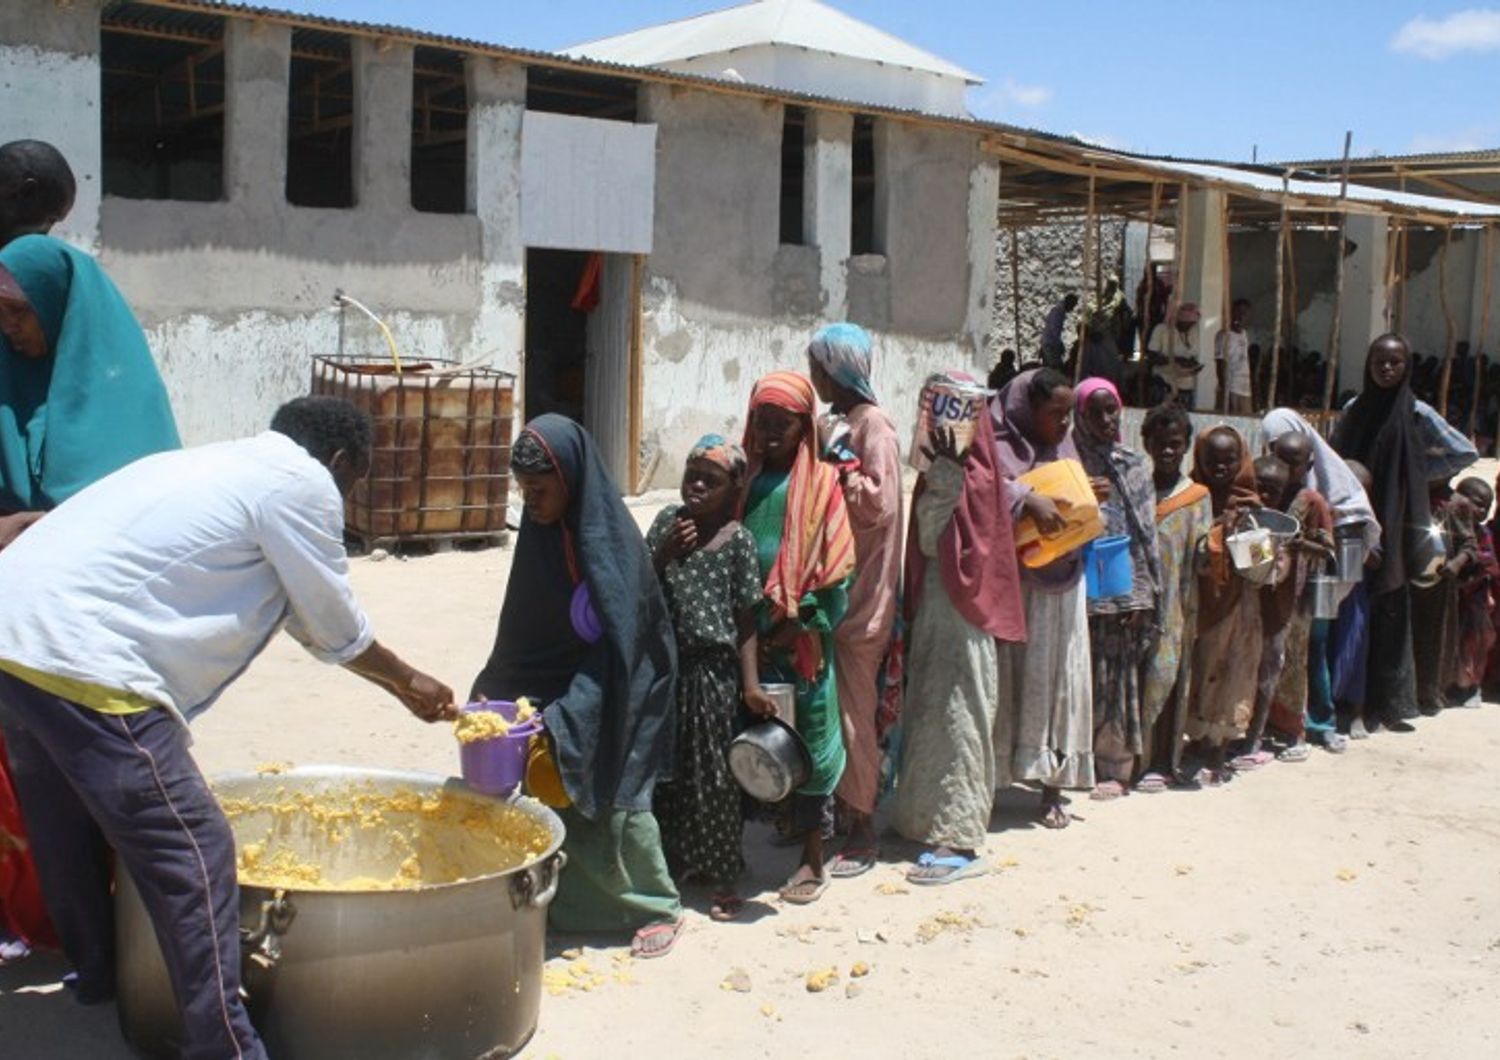 &nbsp;Somalia - bambini - siccita' - fame (Afp)